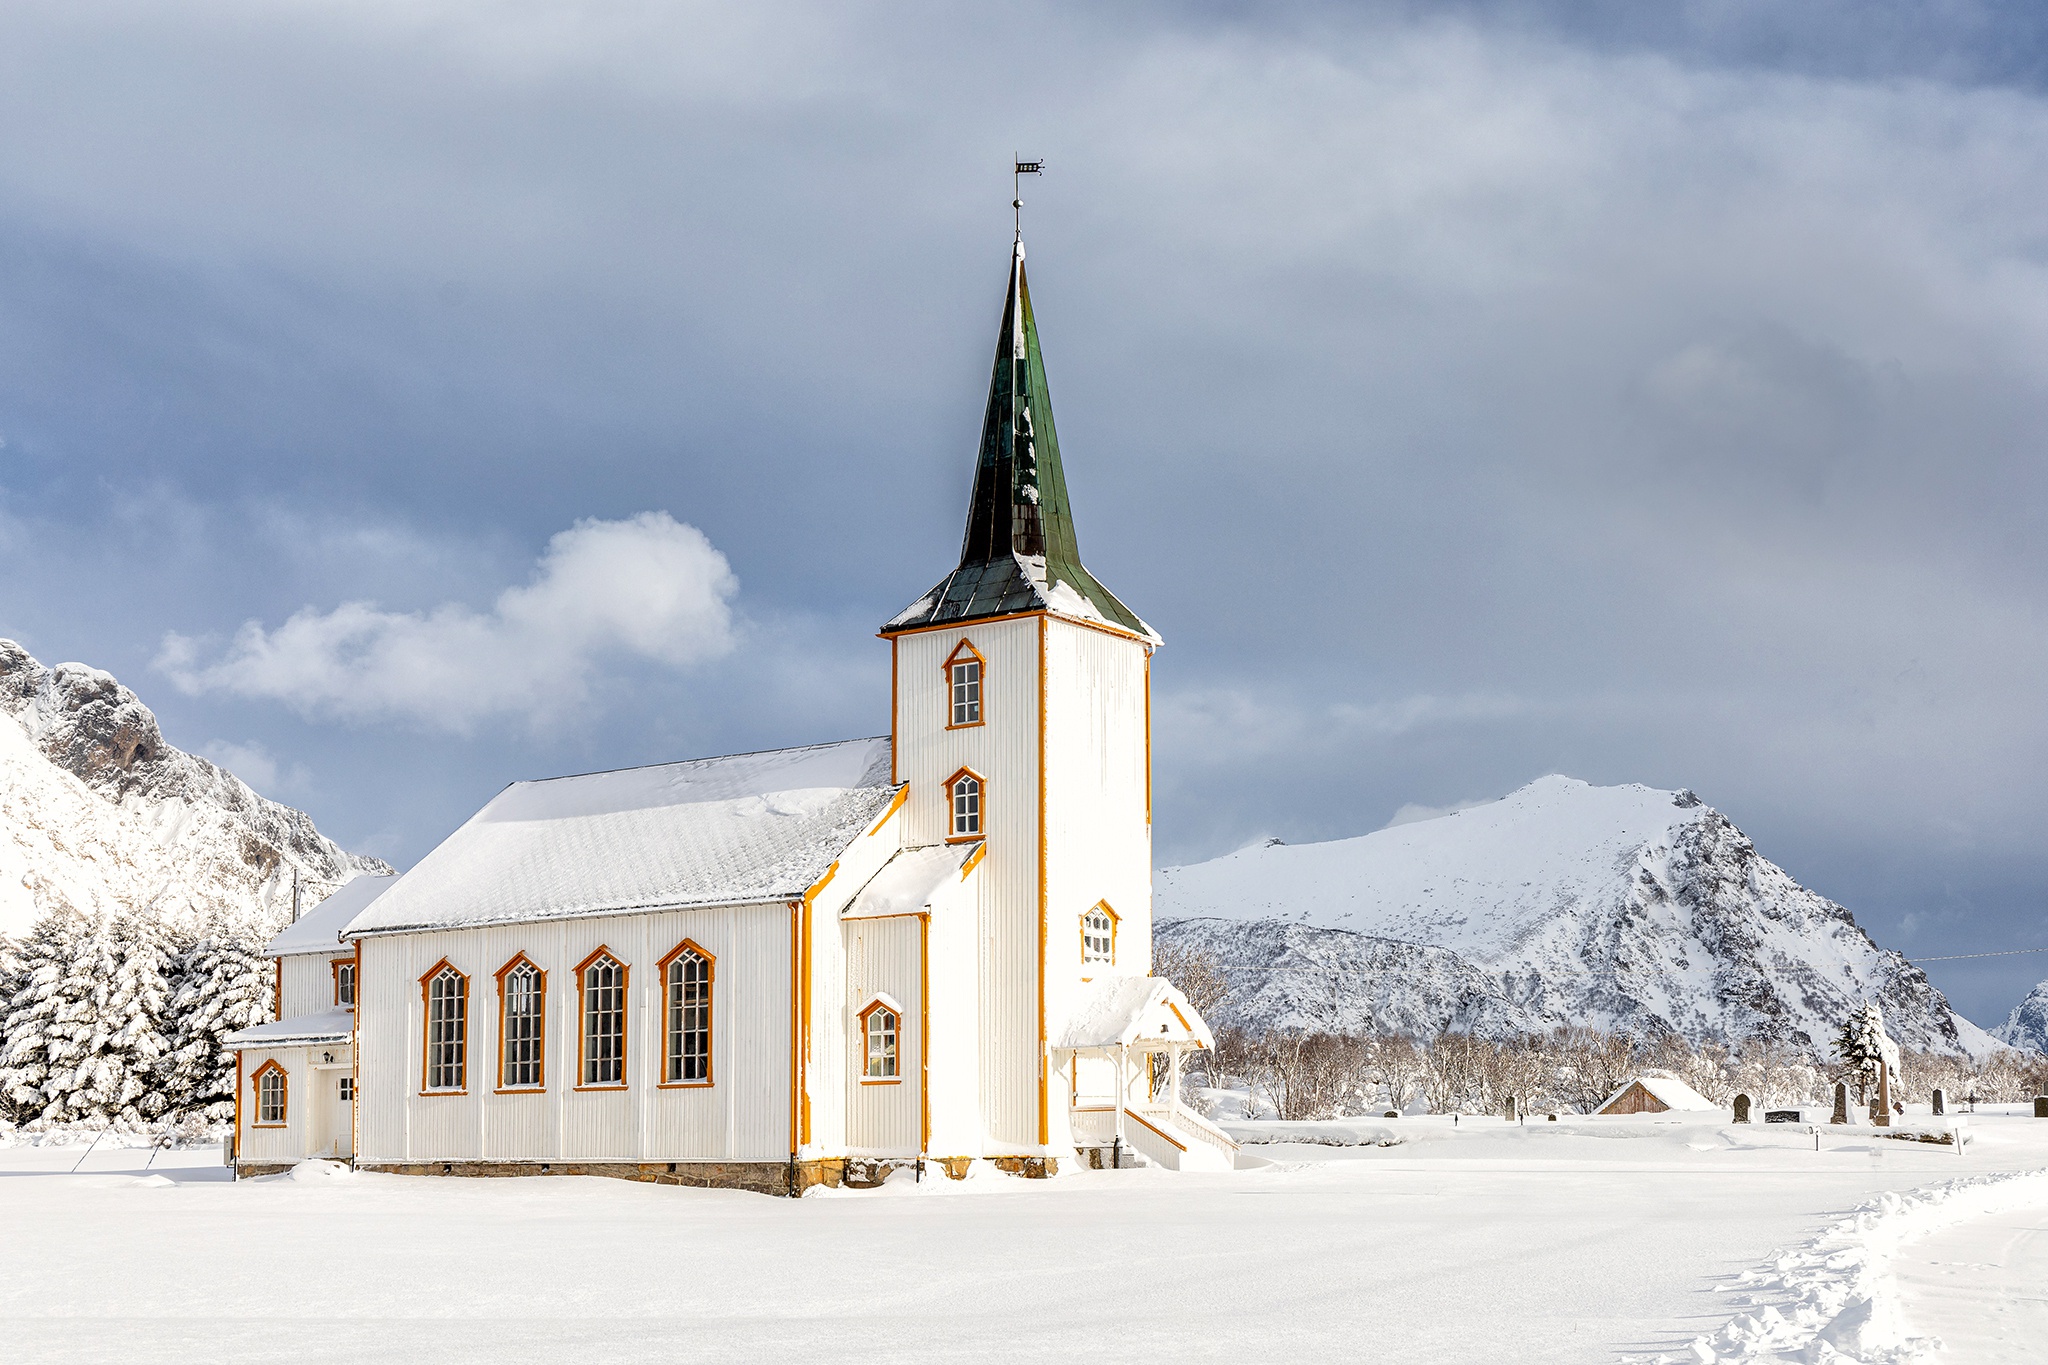 Скачать обои бесплатно Зима, Норвегия, Церковь, Церкви, Лофотенские Острова, Религиозные картинка на рабочий стол ПК